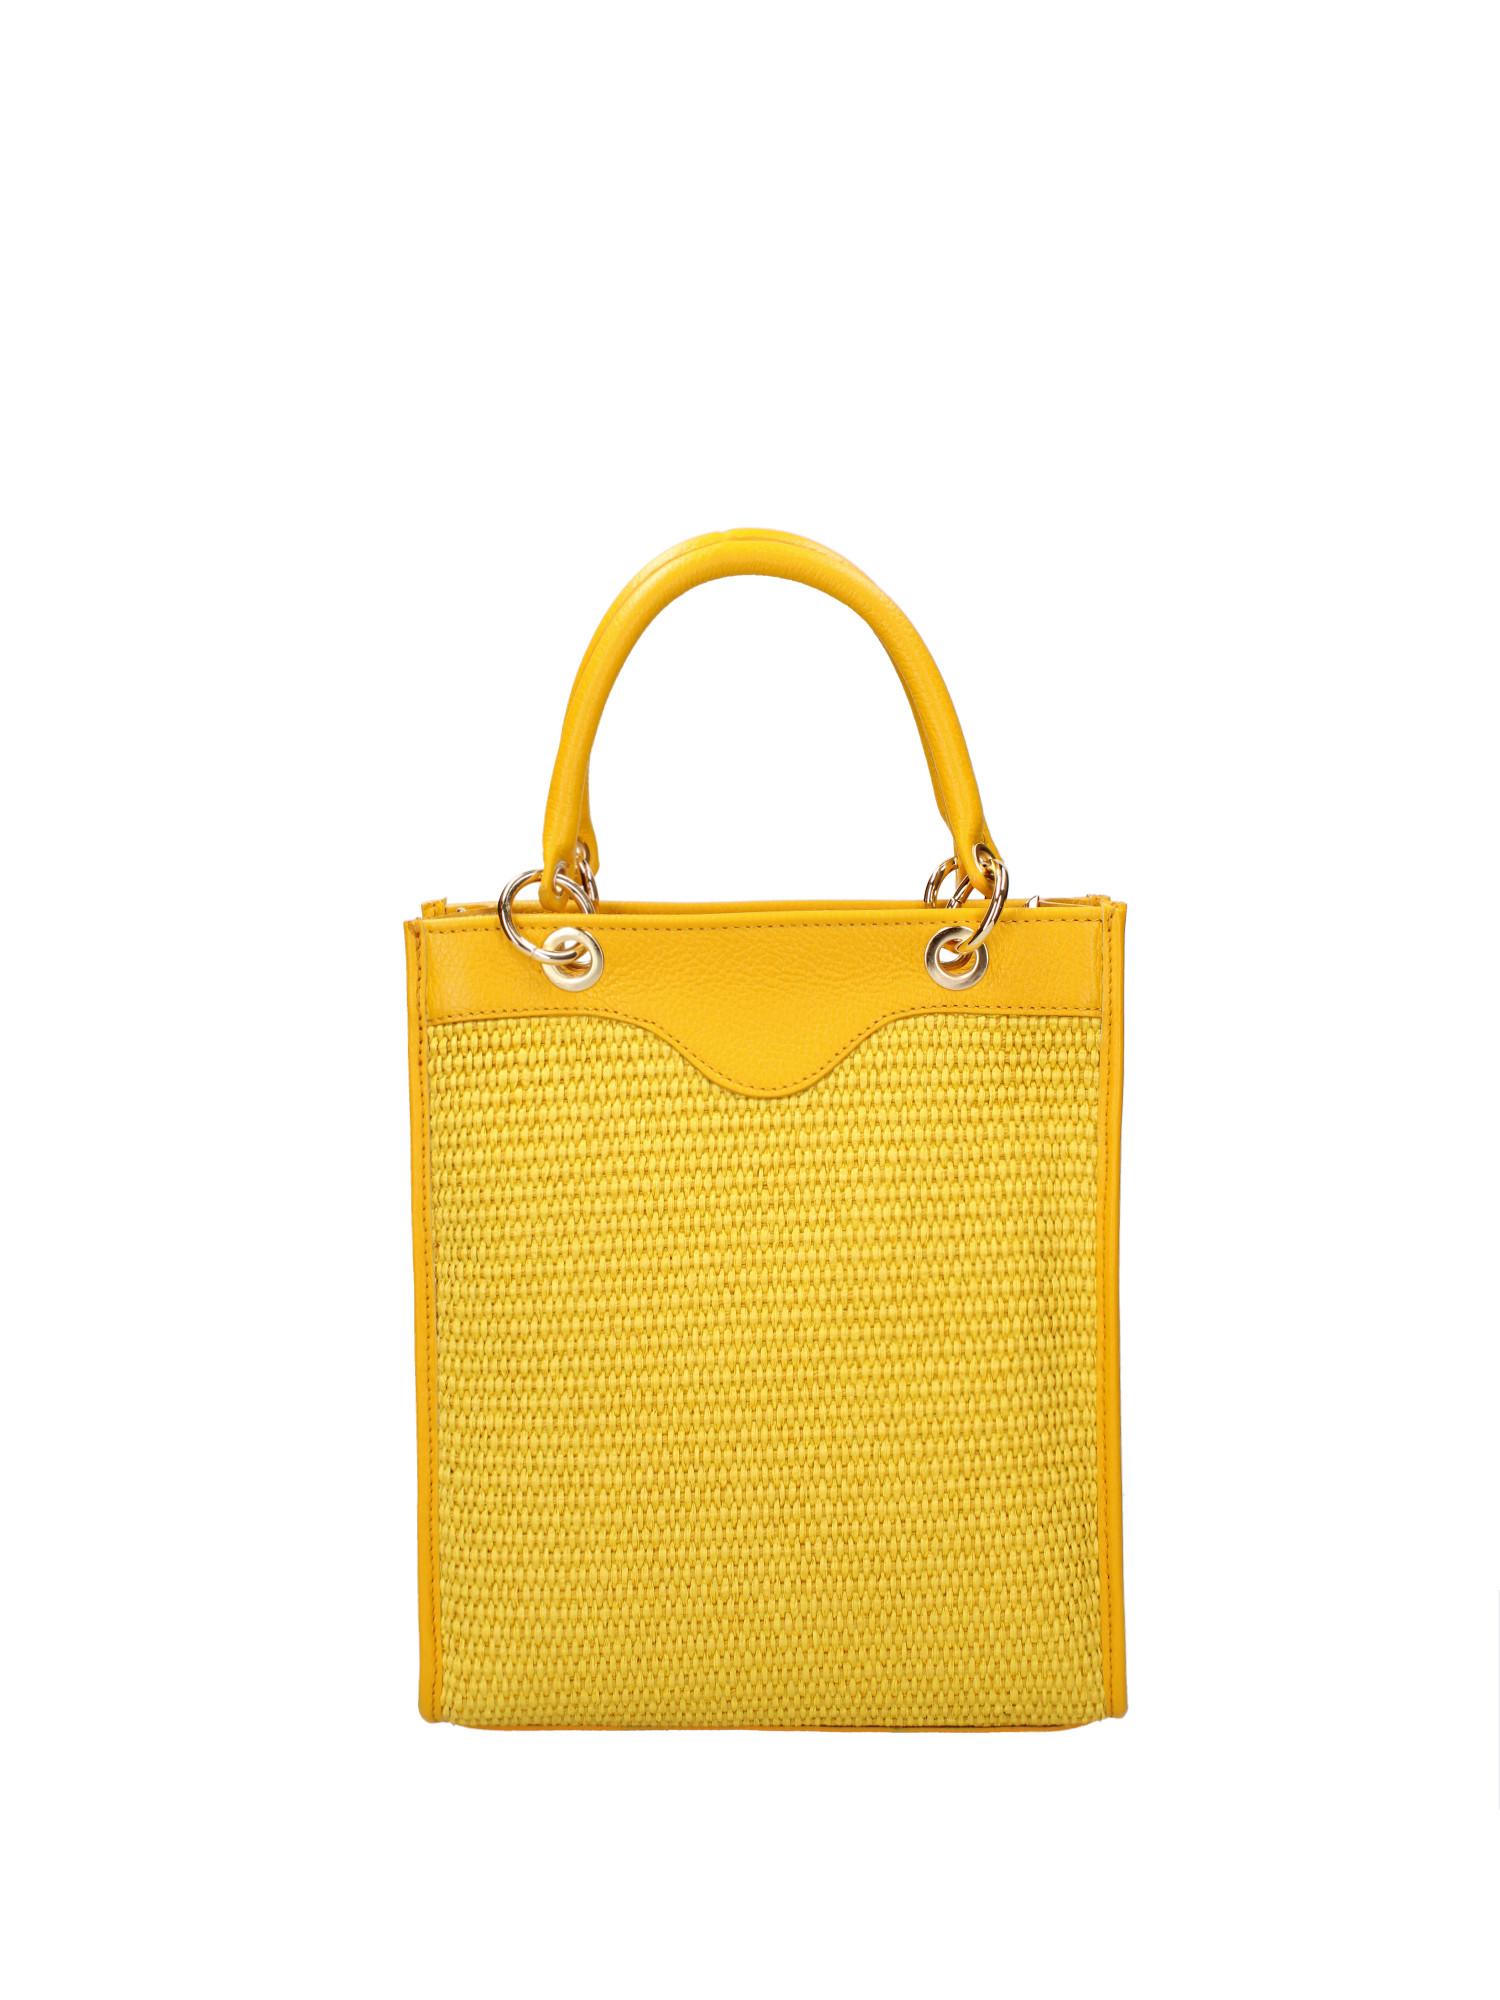 Handtasche Damen Gelb Bunt ONE SIZE von Roberta Rossi